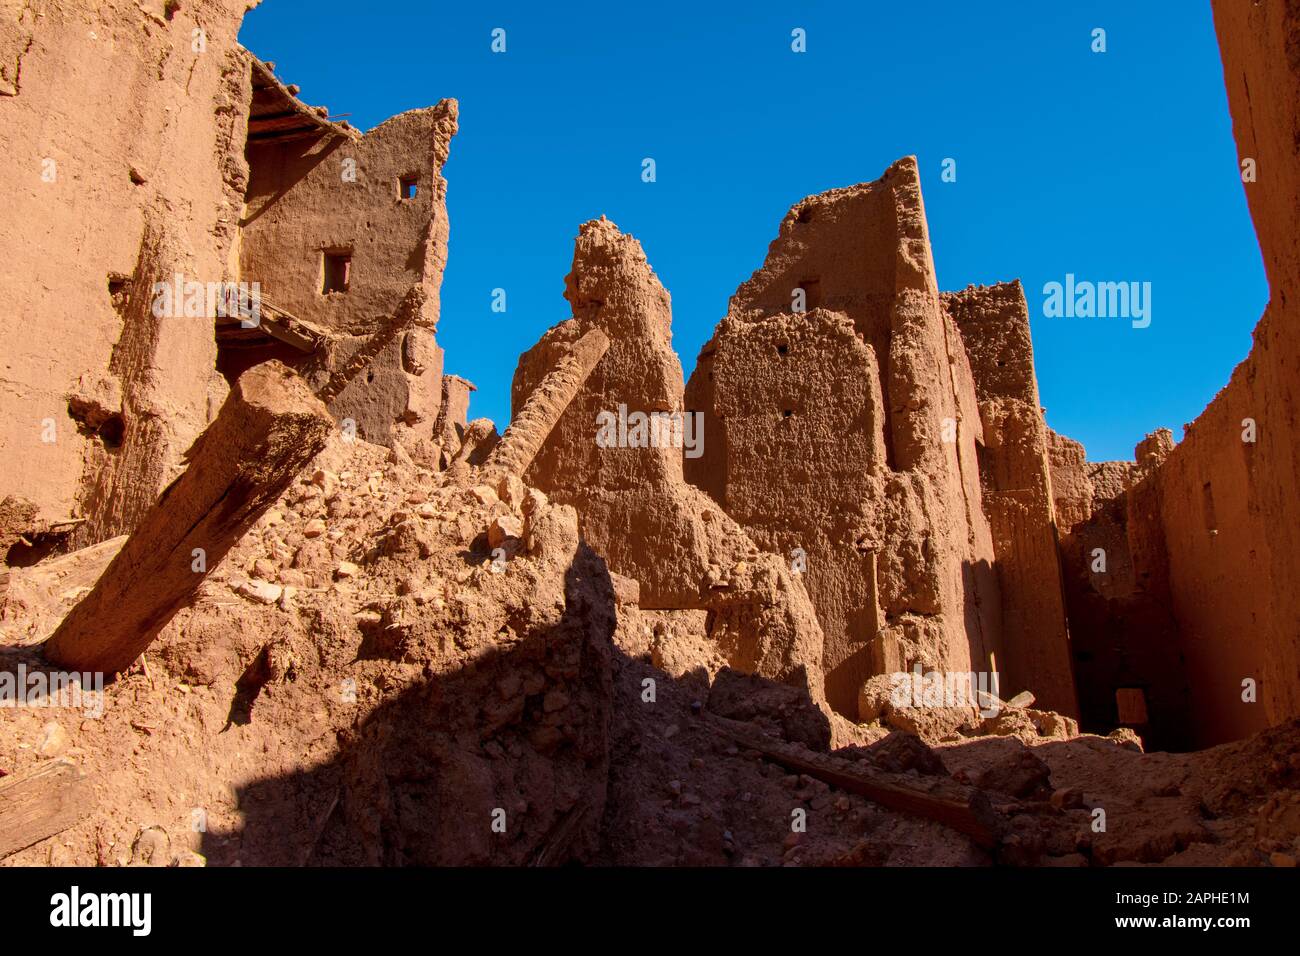 Ruines de la maison en briques de boue dans le désert, Tinghir, Maroc Banque D'Images